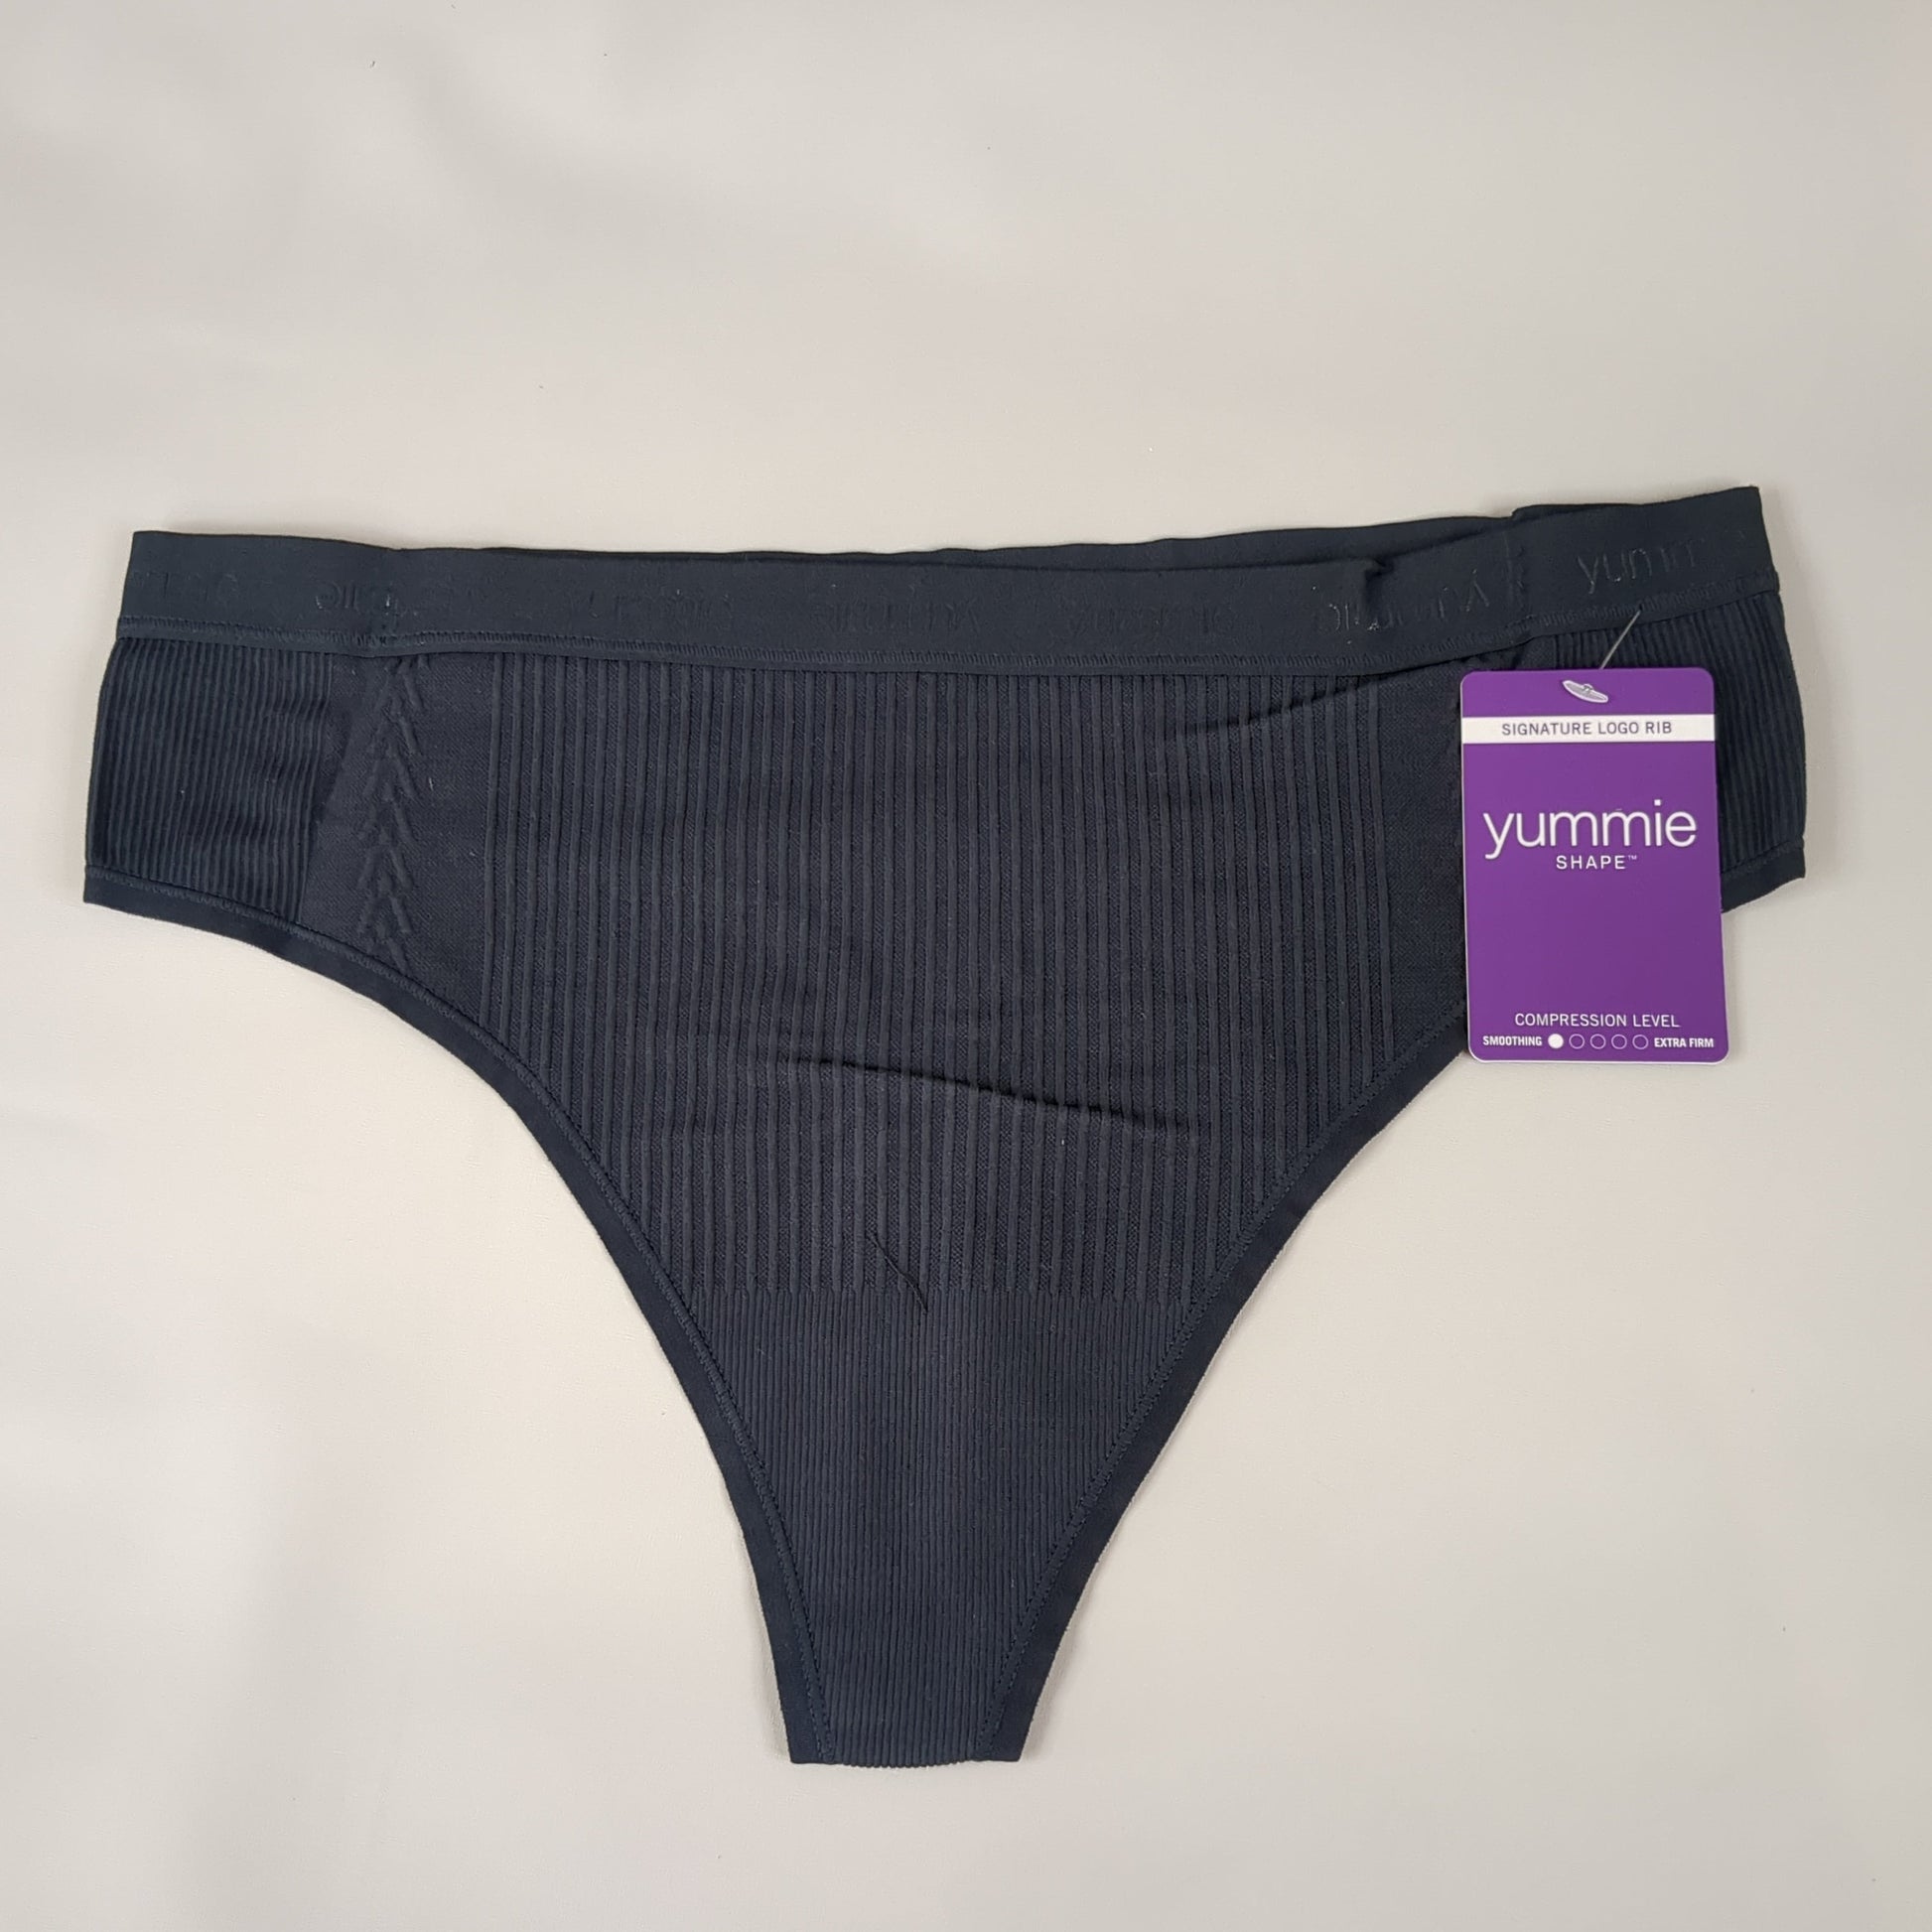 YUMMIE Eden Thong Women's Underwear Sz L/XL Black YT5-291 (New) – PayWut